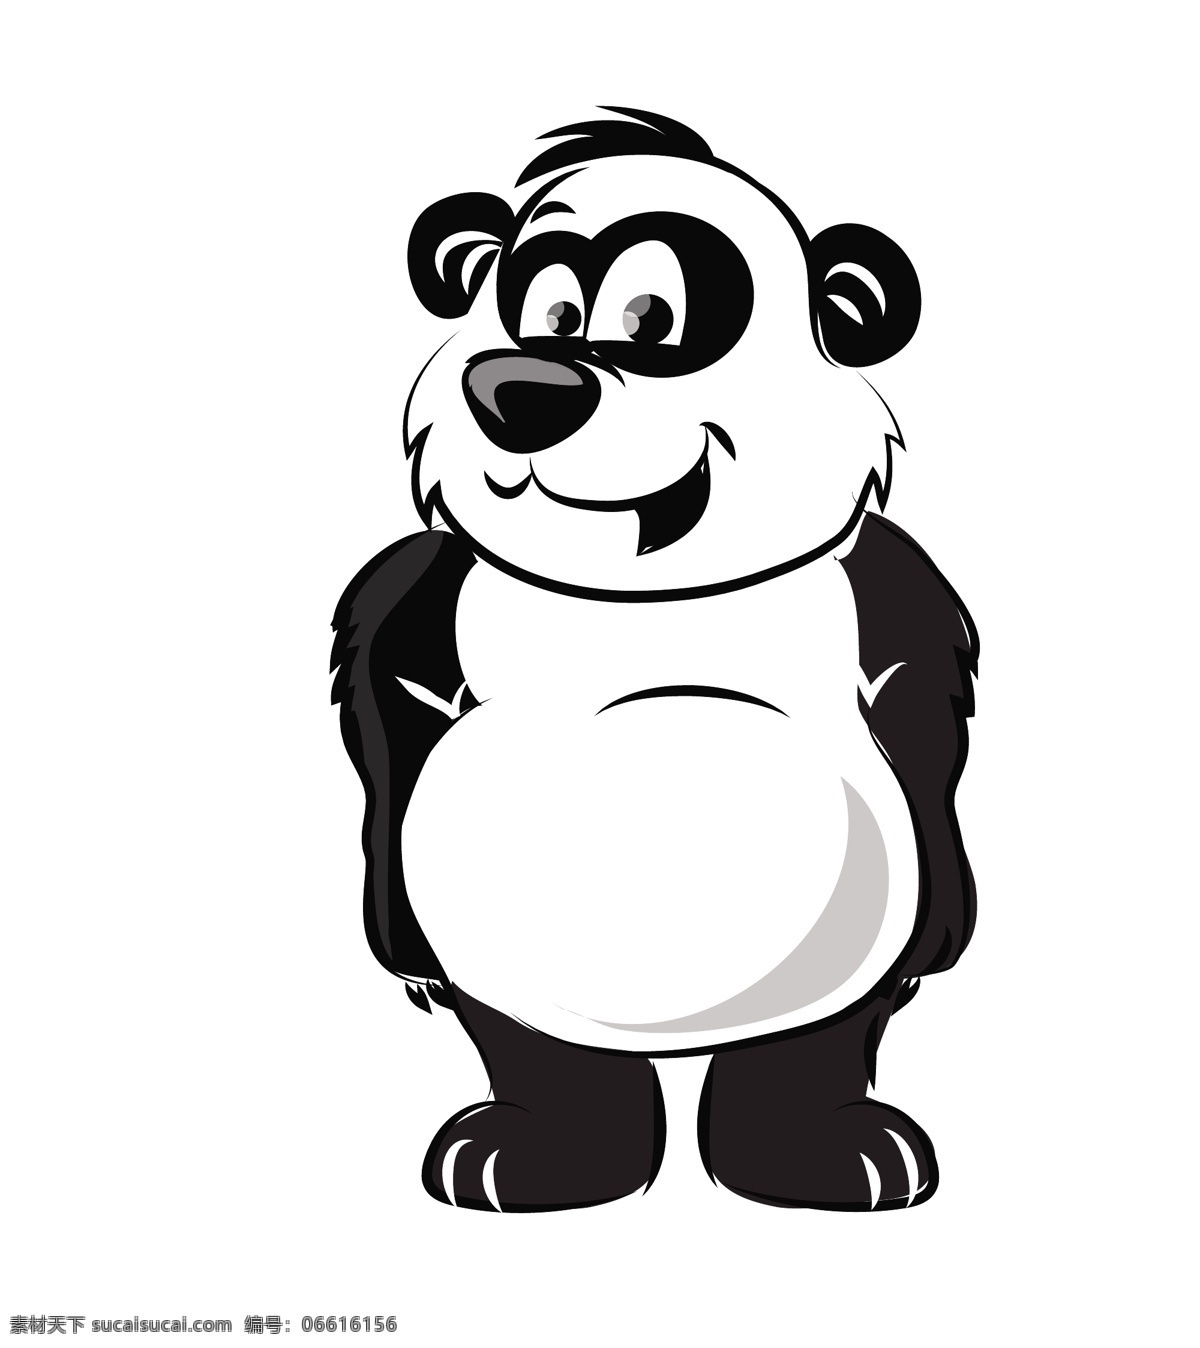 卡通 矢量 熊猫 动物 插画 卡通动物漫画 卡通形象 矢量人物 矢量素材 矢量动物